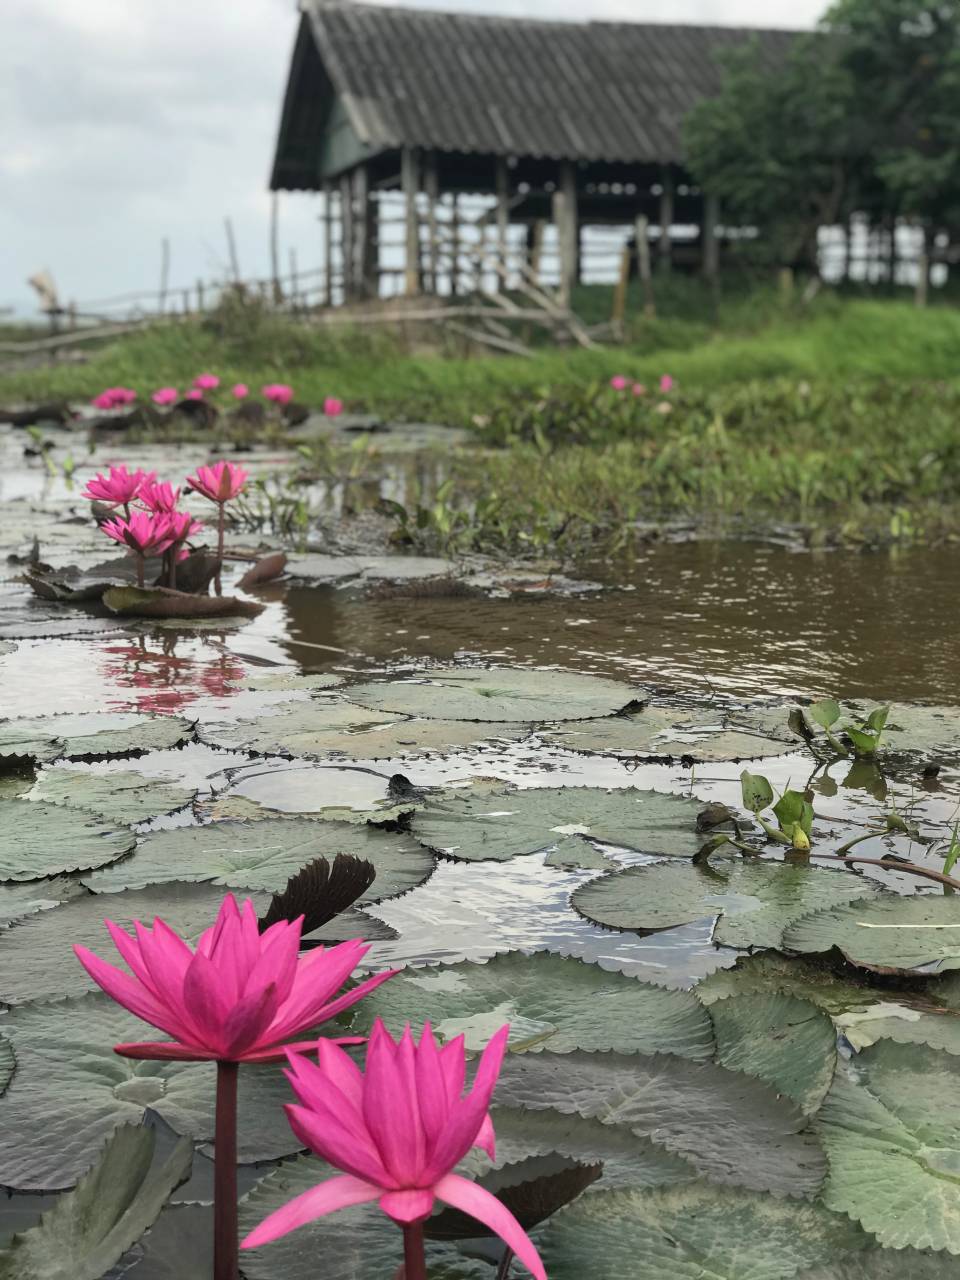 莲花盛开季节是4月，当莲花盛开时，整个湖都是粉红色的莲花，看了也不禁觉得心花怒放。